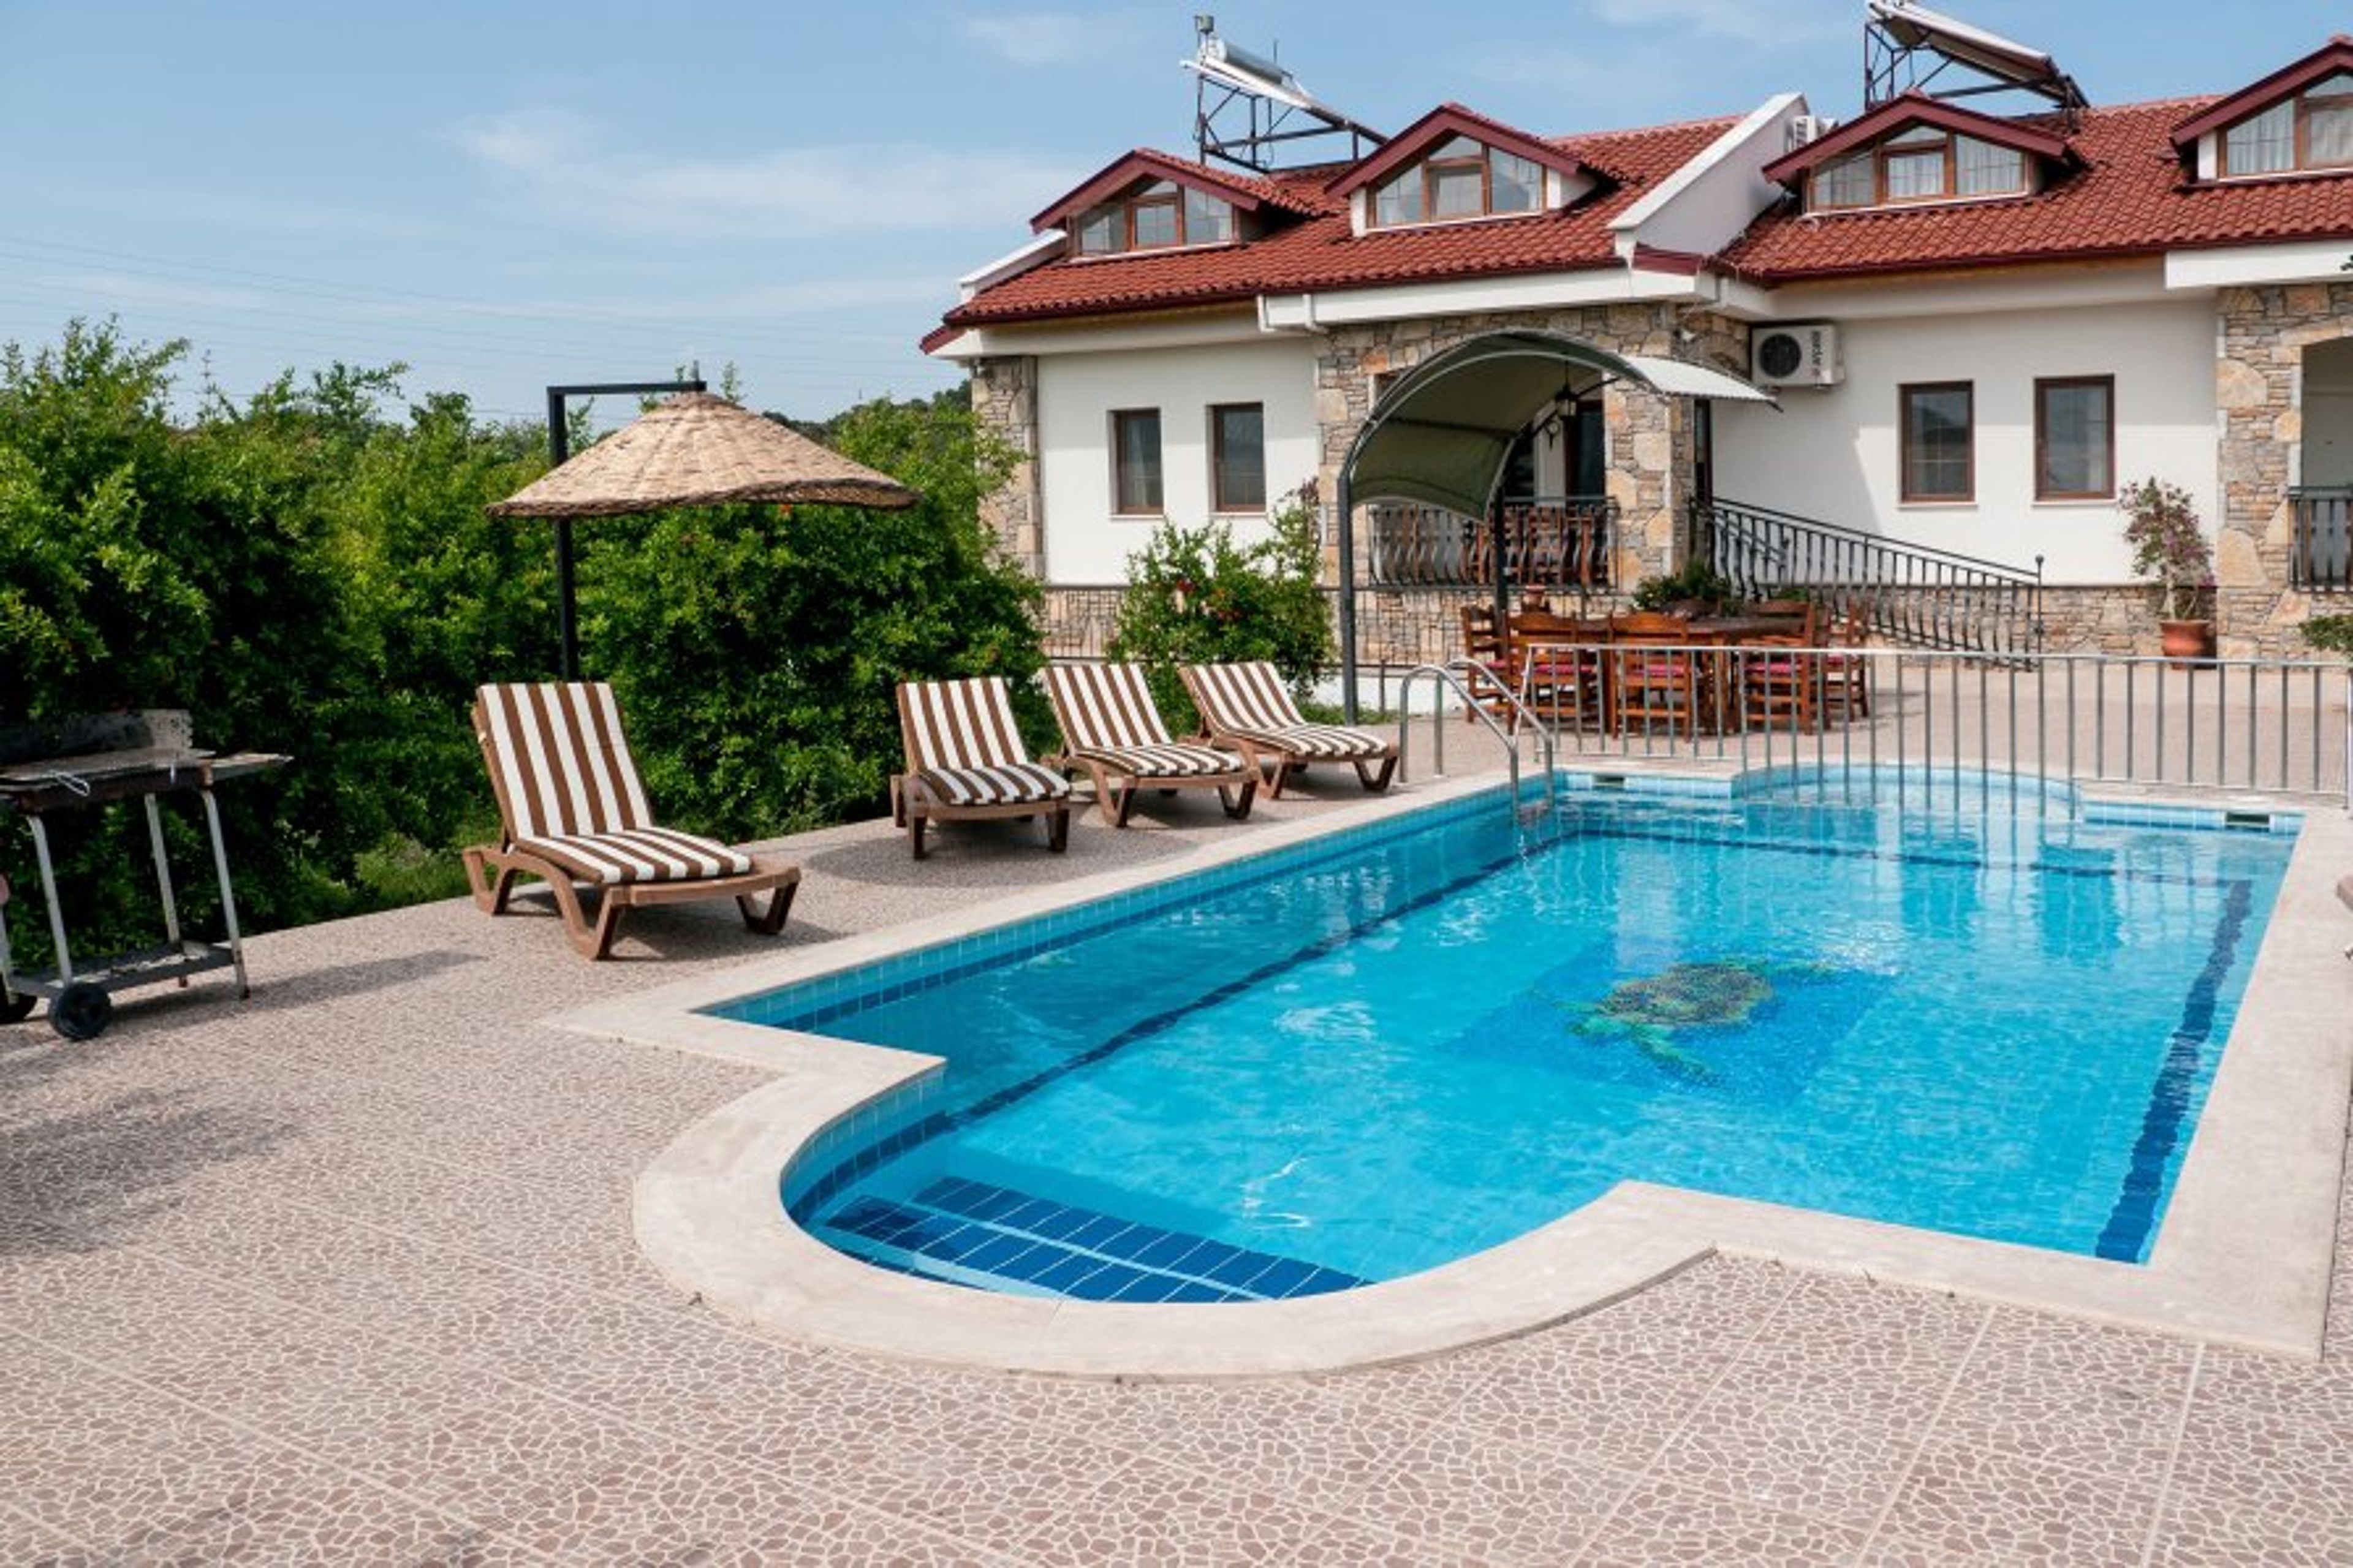 Villa Caria & Villa Byblis with pool
